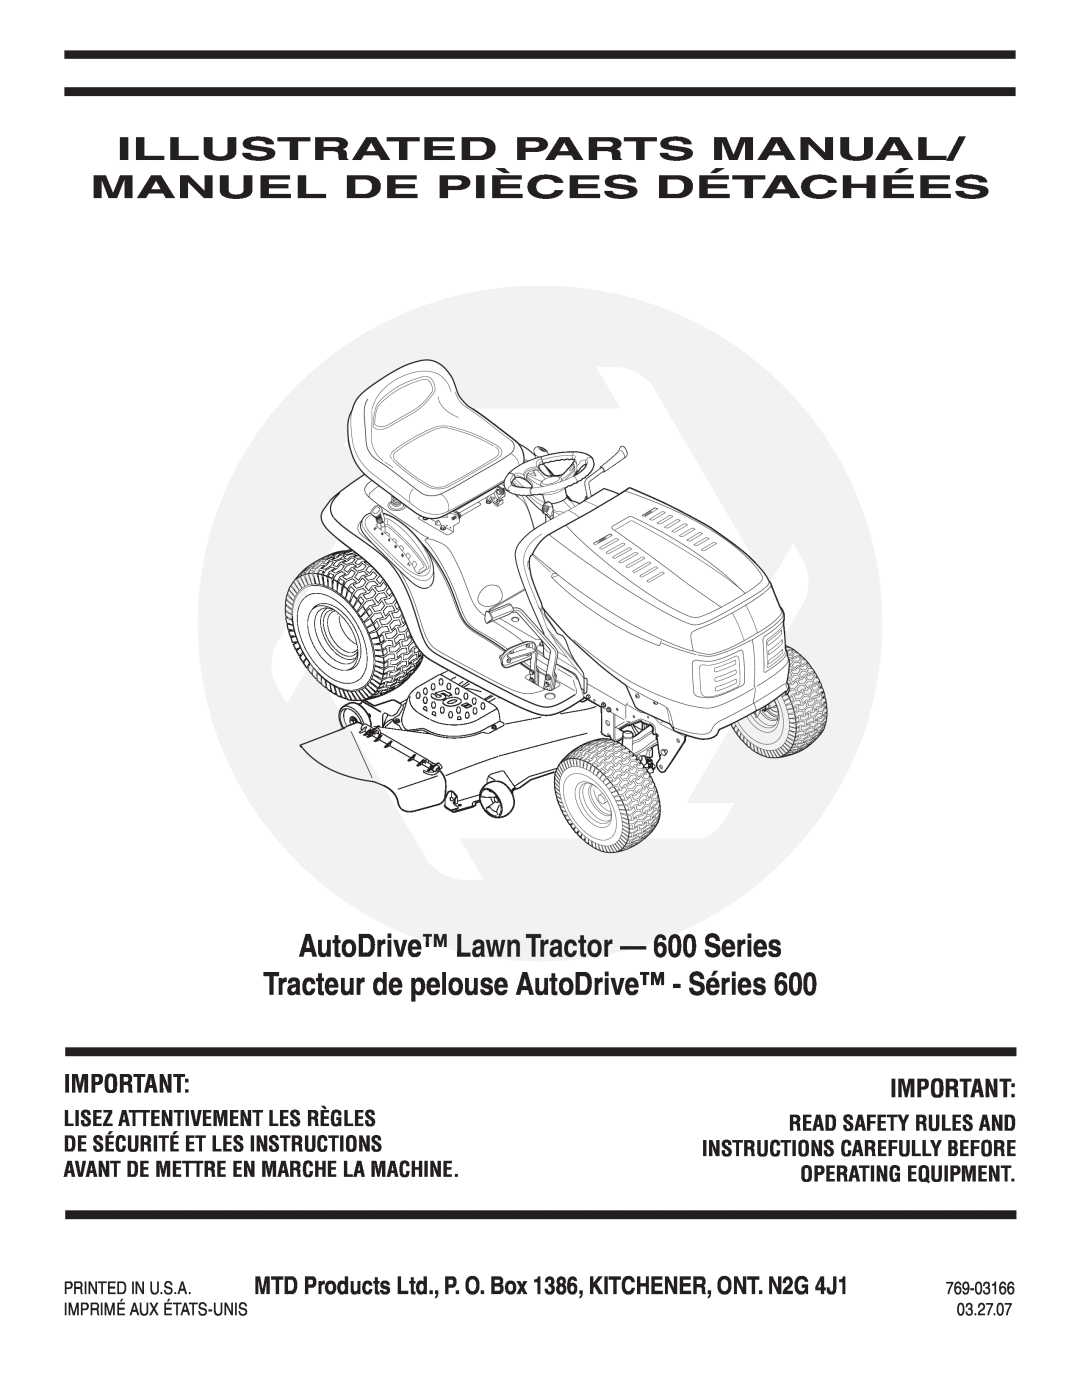 MTD manual AutoDrive Lawn Tractor - 600 Series, Tracteur de pelouse AutoDrive - Séries, 769-03166, 03.27.07 